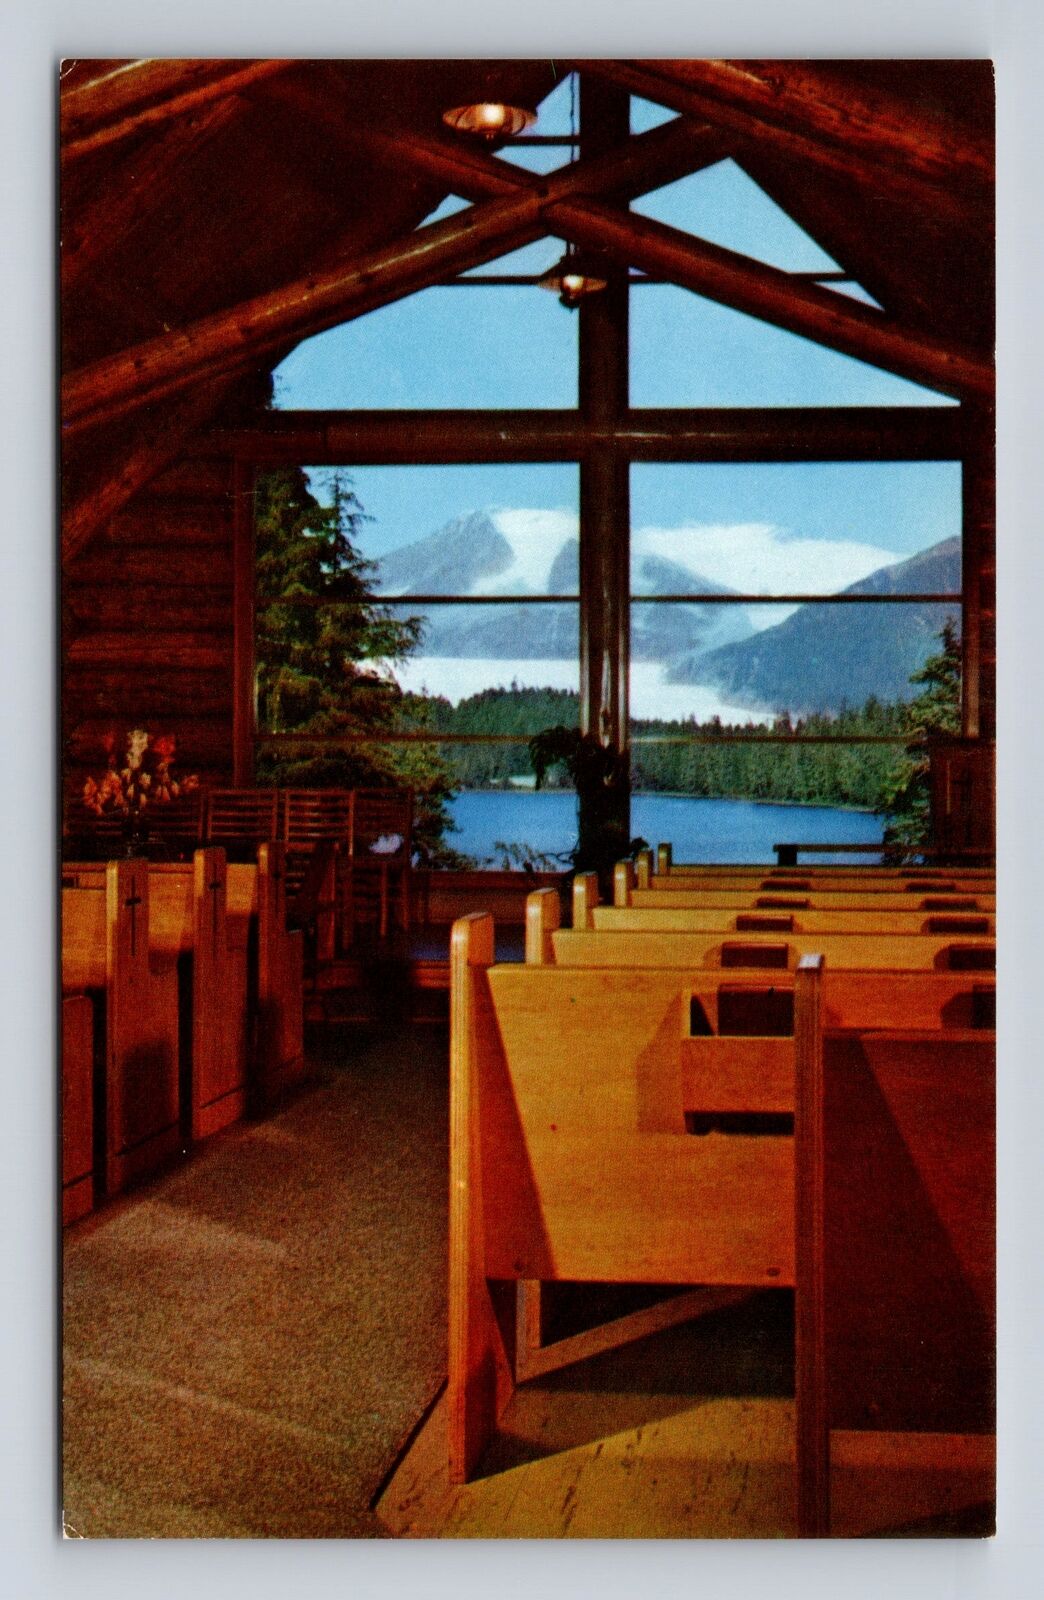 Juneau AK-Alaska, Chapel by Lake, Auke Bay, Mendenhall Glacier Vintage Postcard